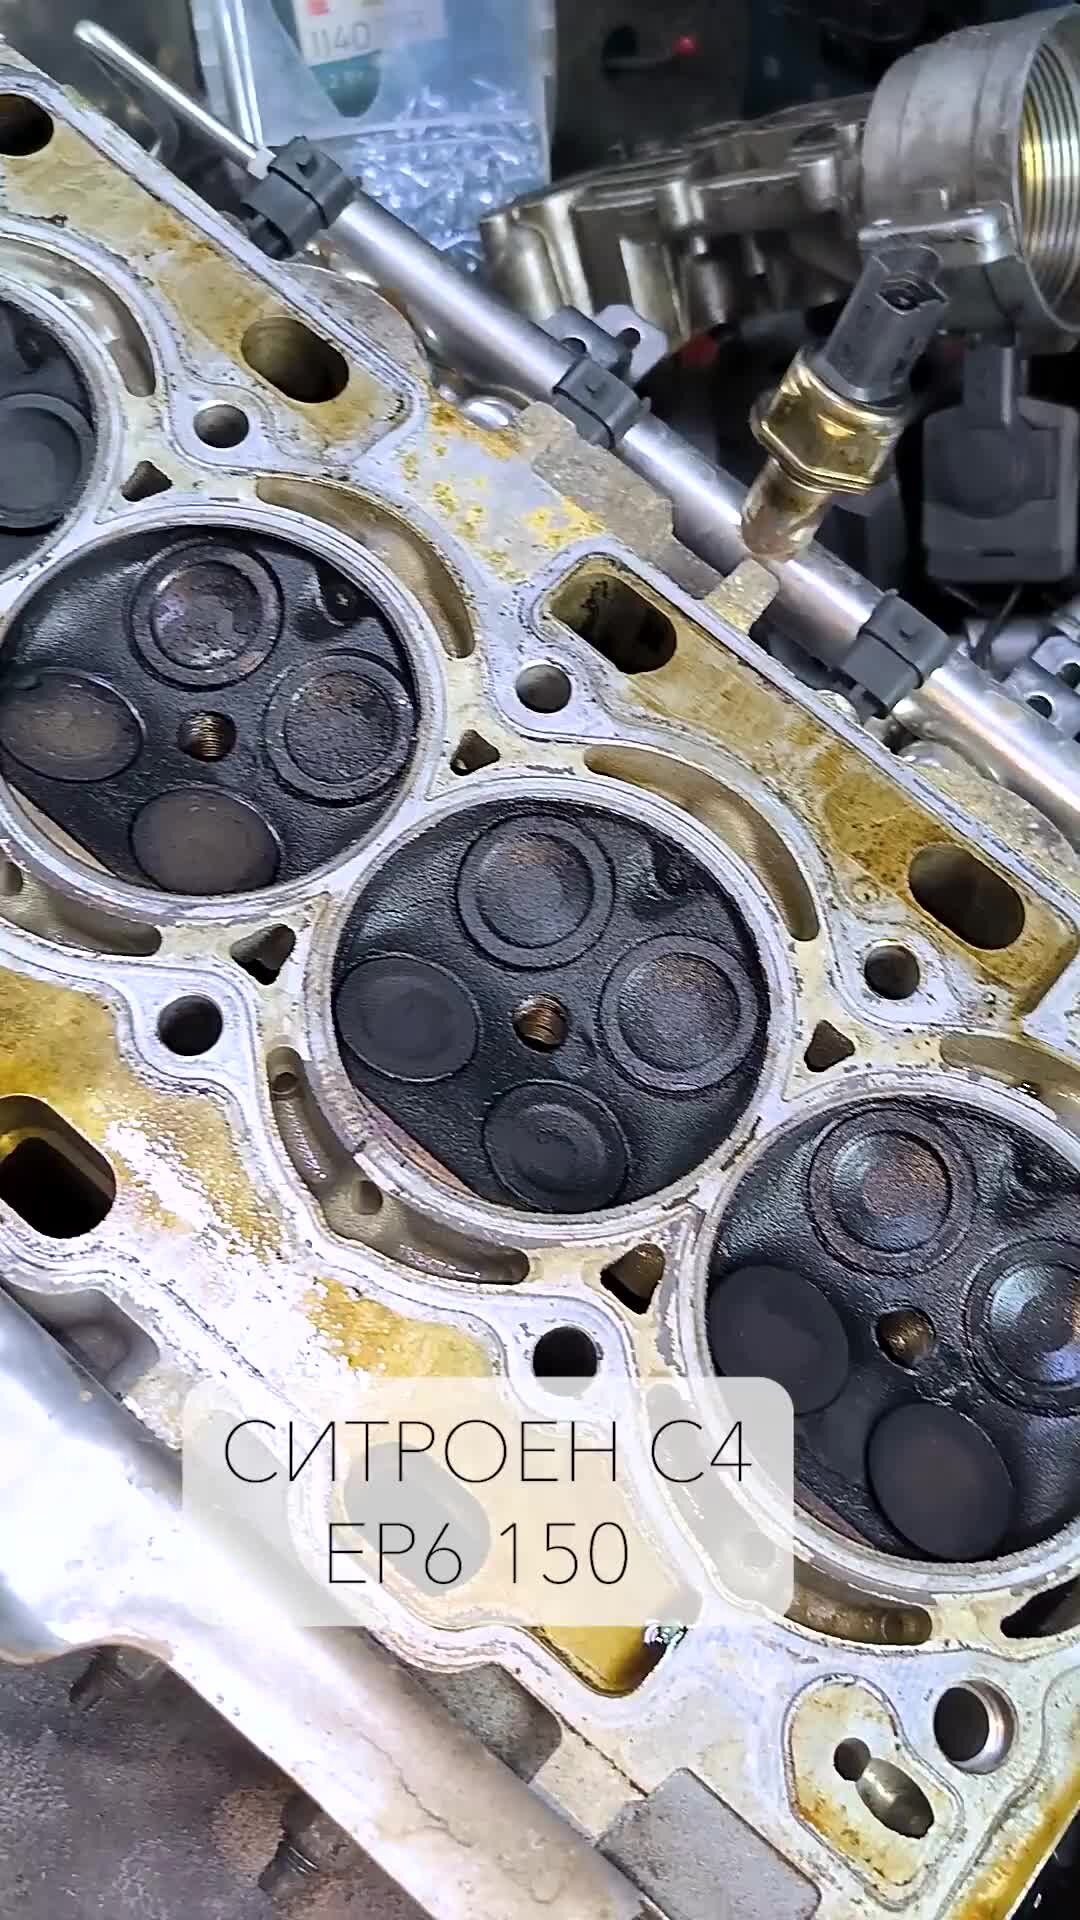 Замена двигателя - Страница 3 - Клуб Citroen C4 Sedan